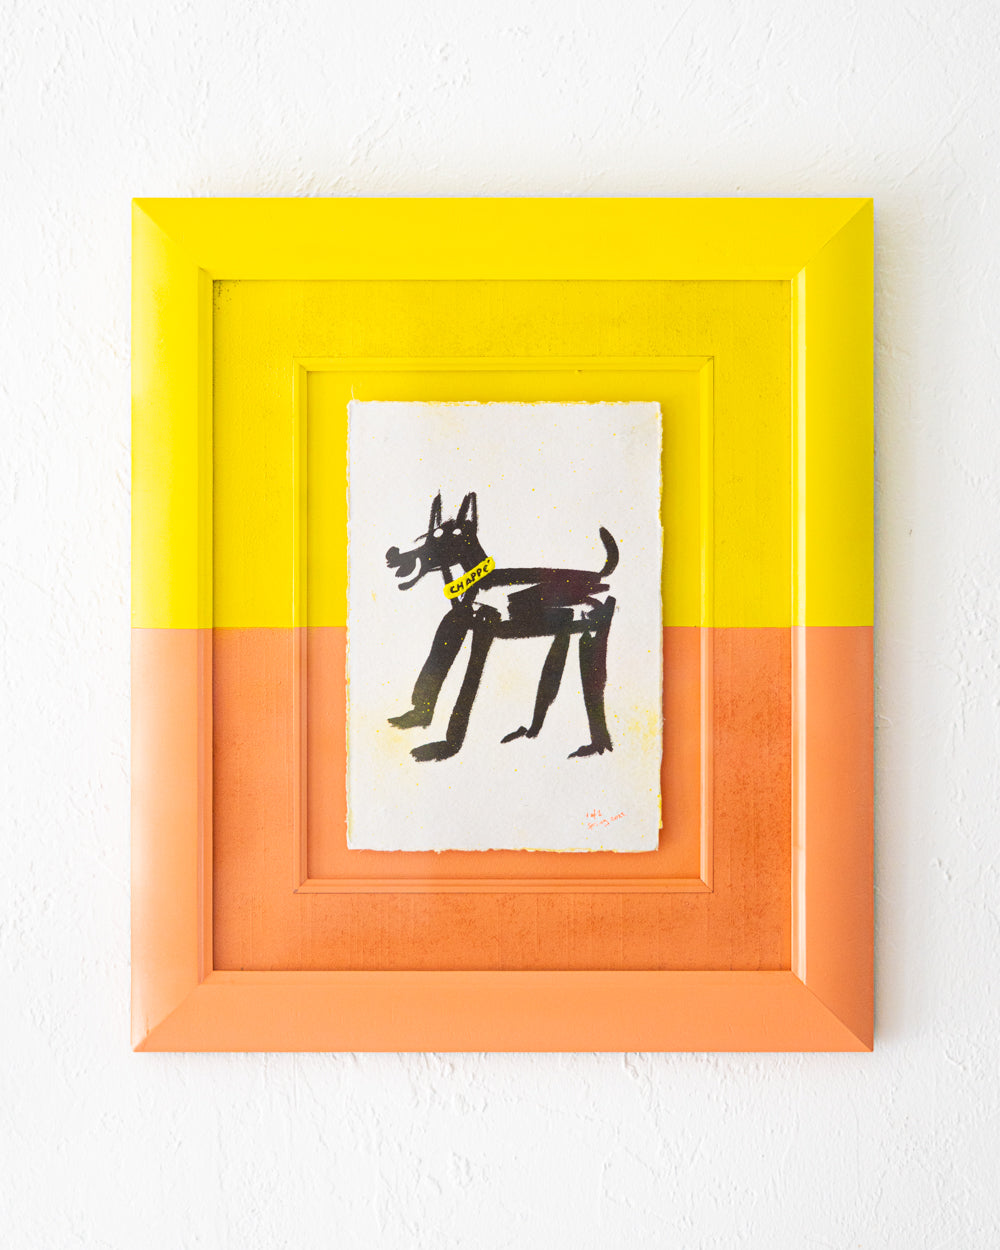 Happy Dog Wearing Slacks Yellow and Orange frame - 1 of 1